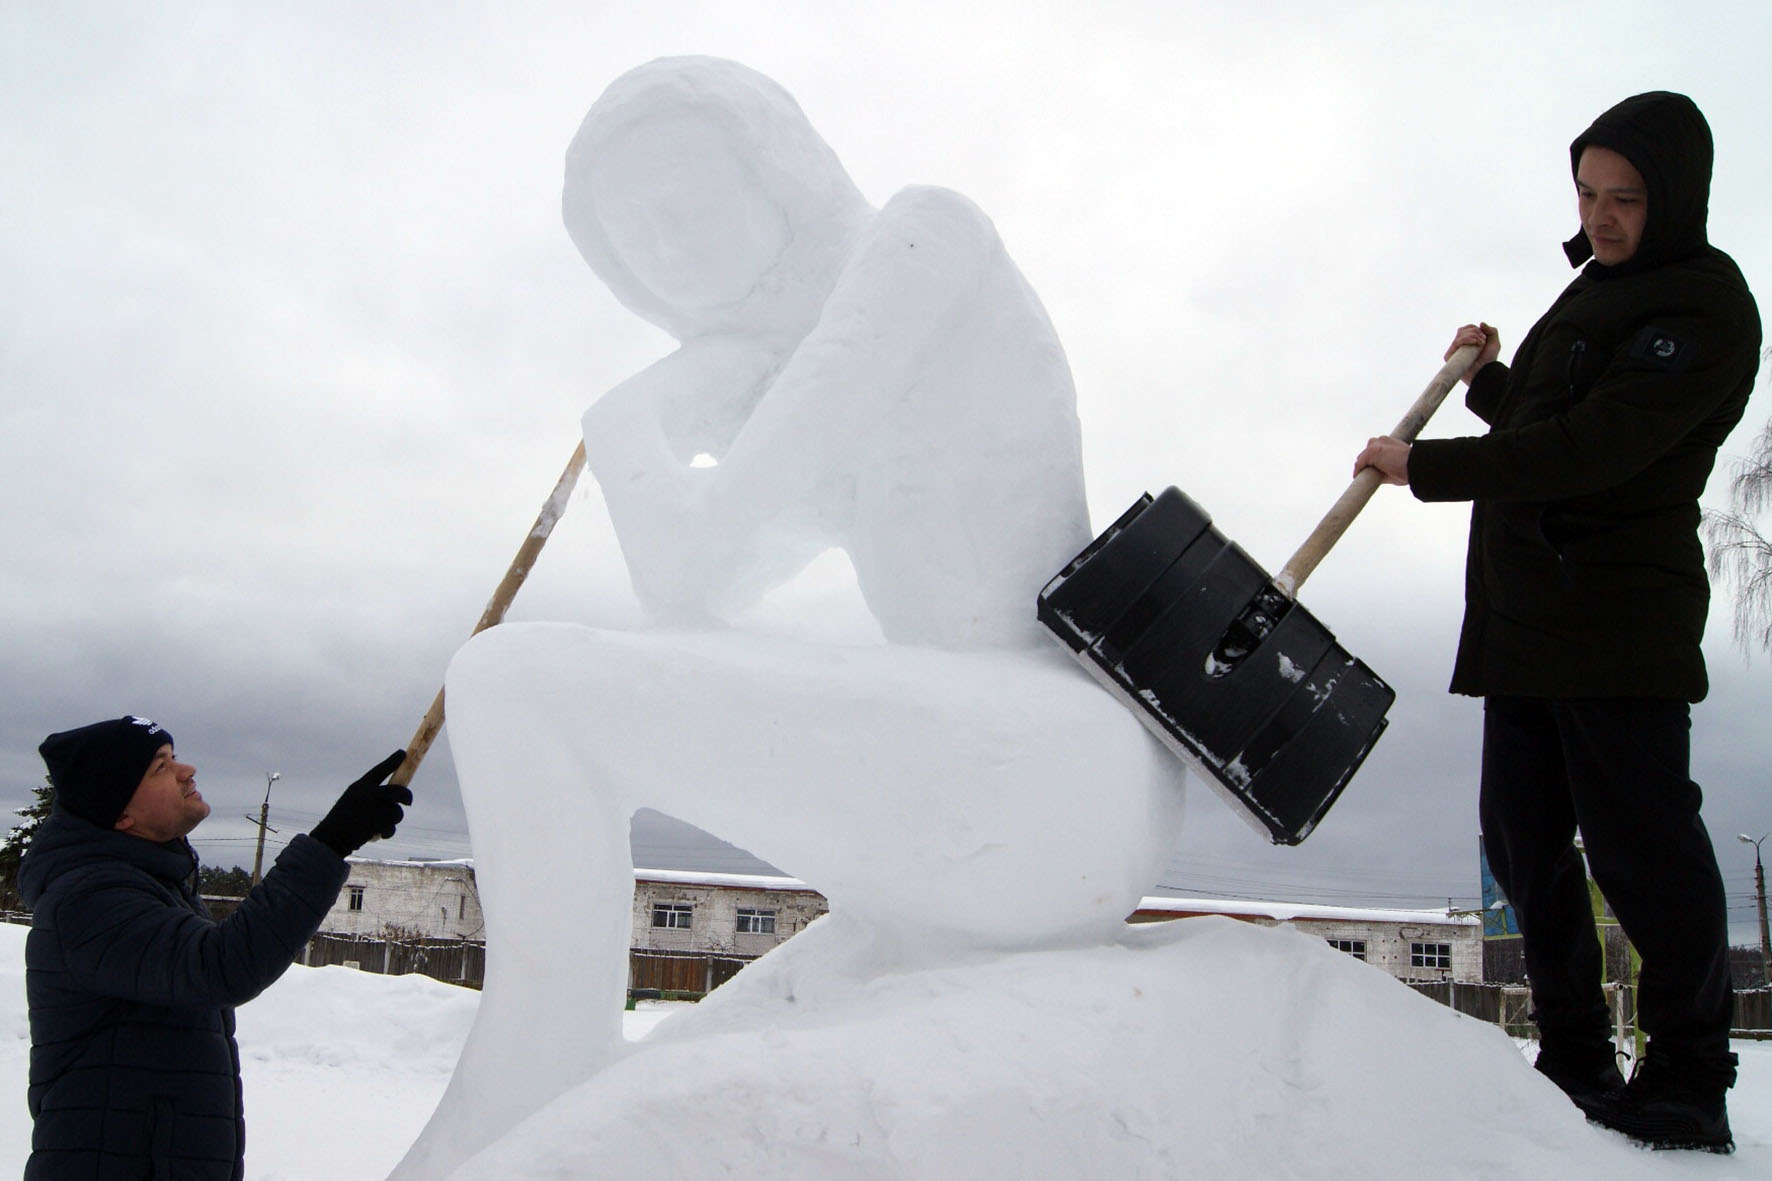 В колониях Марий Эл проходит конкурс снежных фигур среди осужденных